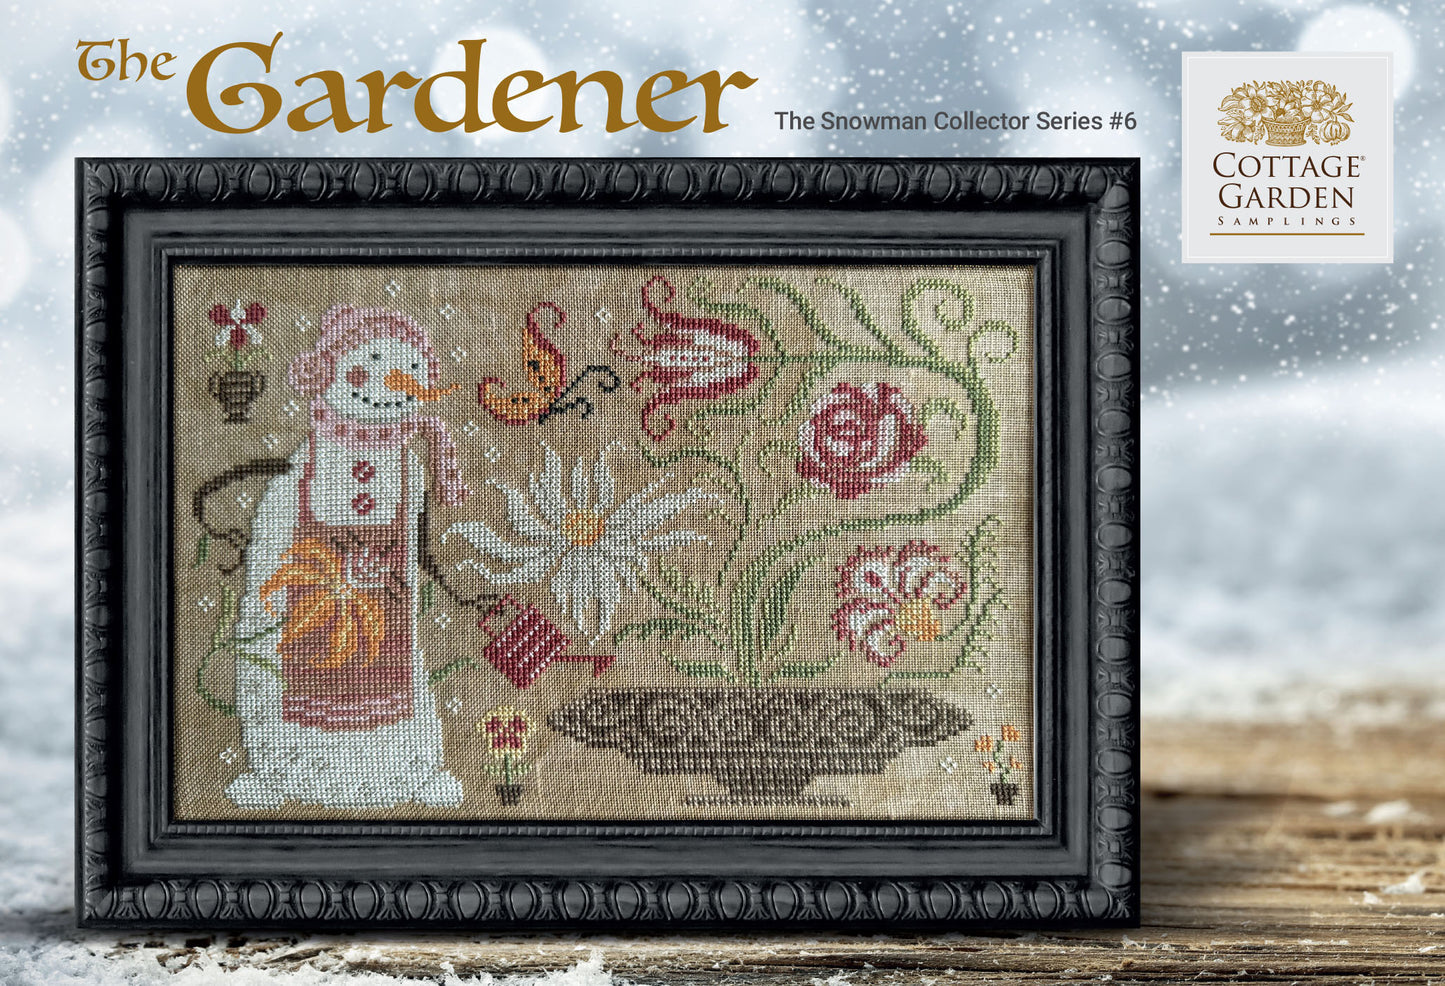 The Gardener by Cottage Garden Samplings